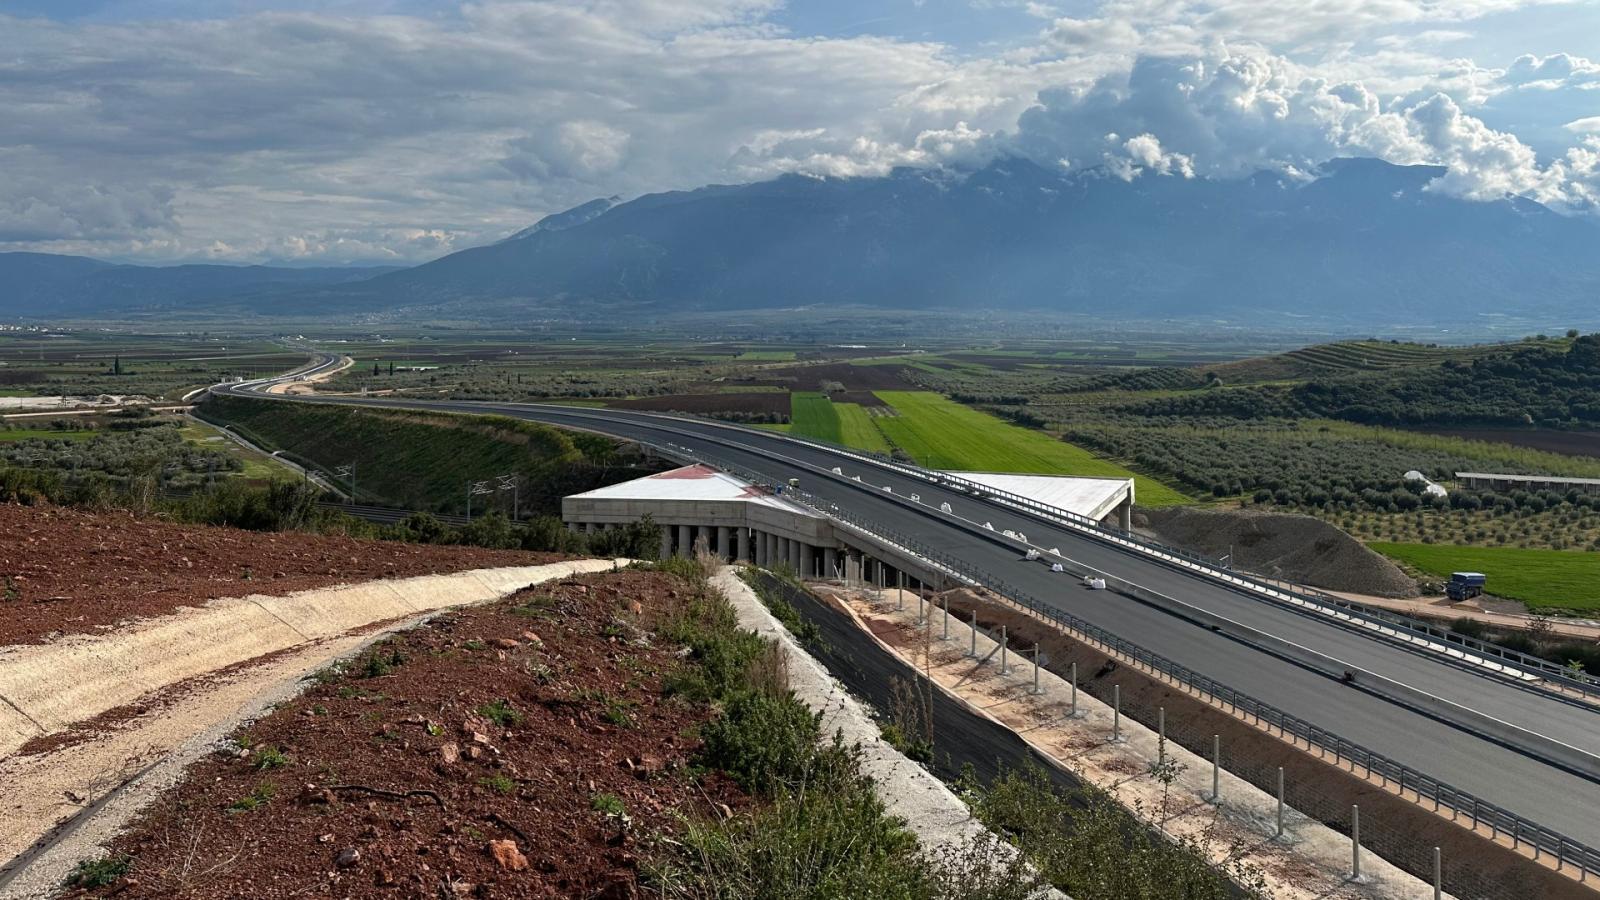 Έτοιμος ο αυτοκινητόδρομος που αλλάζει την Κεντρική Ελλάδα -Από Αθήνα στην Καρδίτσα σε 2.5 ώρες